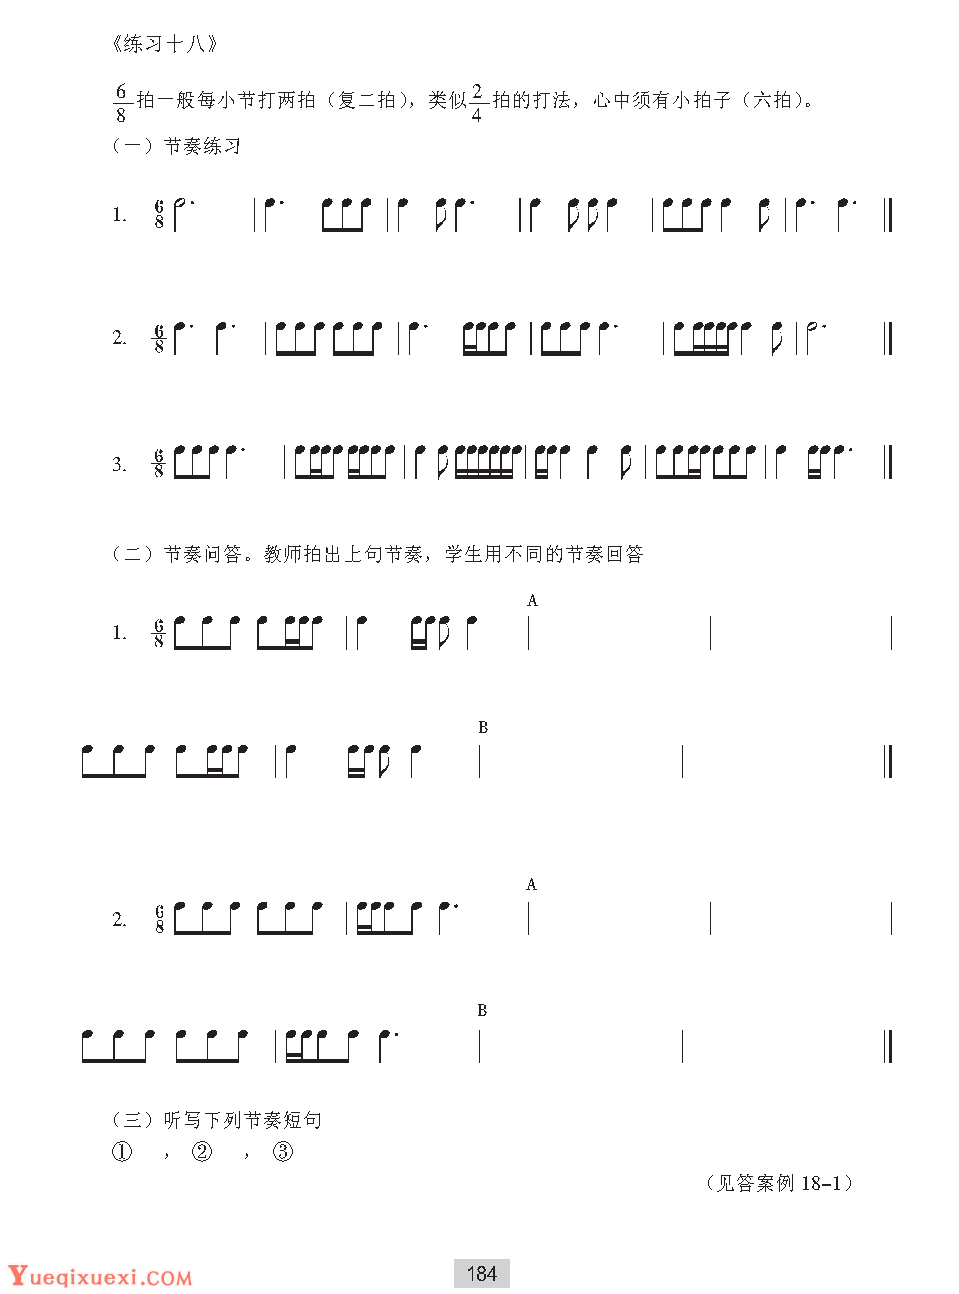 视唱教学第十八课 节拍与节奏 6 8拍子 乐器学习网